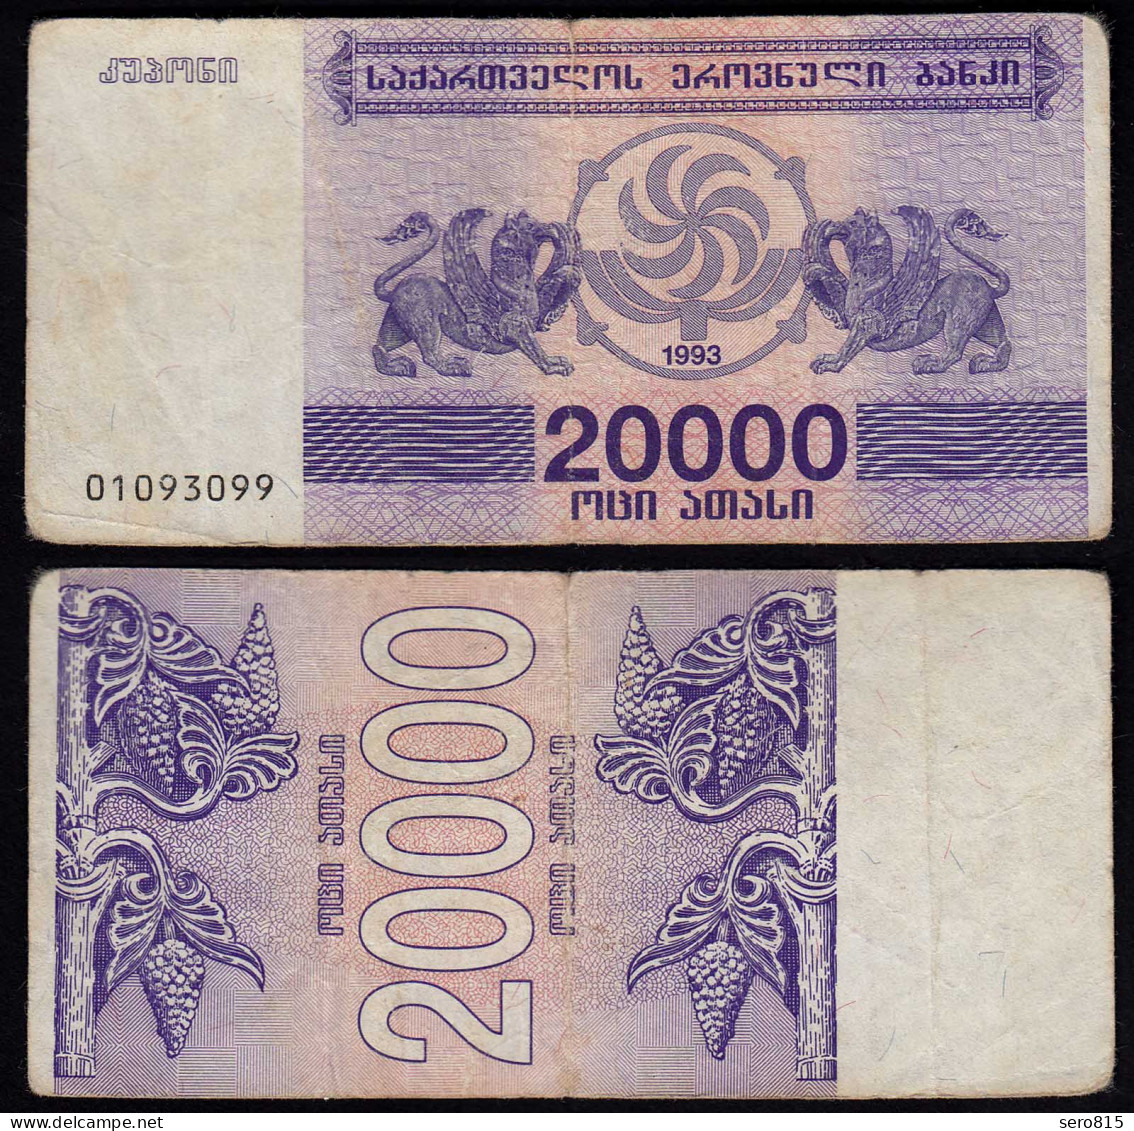  Georgien - Georgia 20000 20.000 Lari 1993 Pick 46a F  (4)    (23371 - Autres - Asie